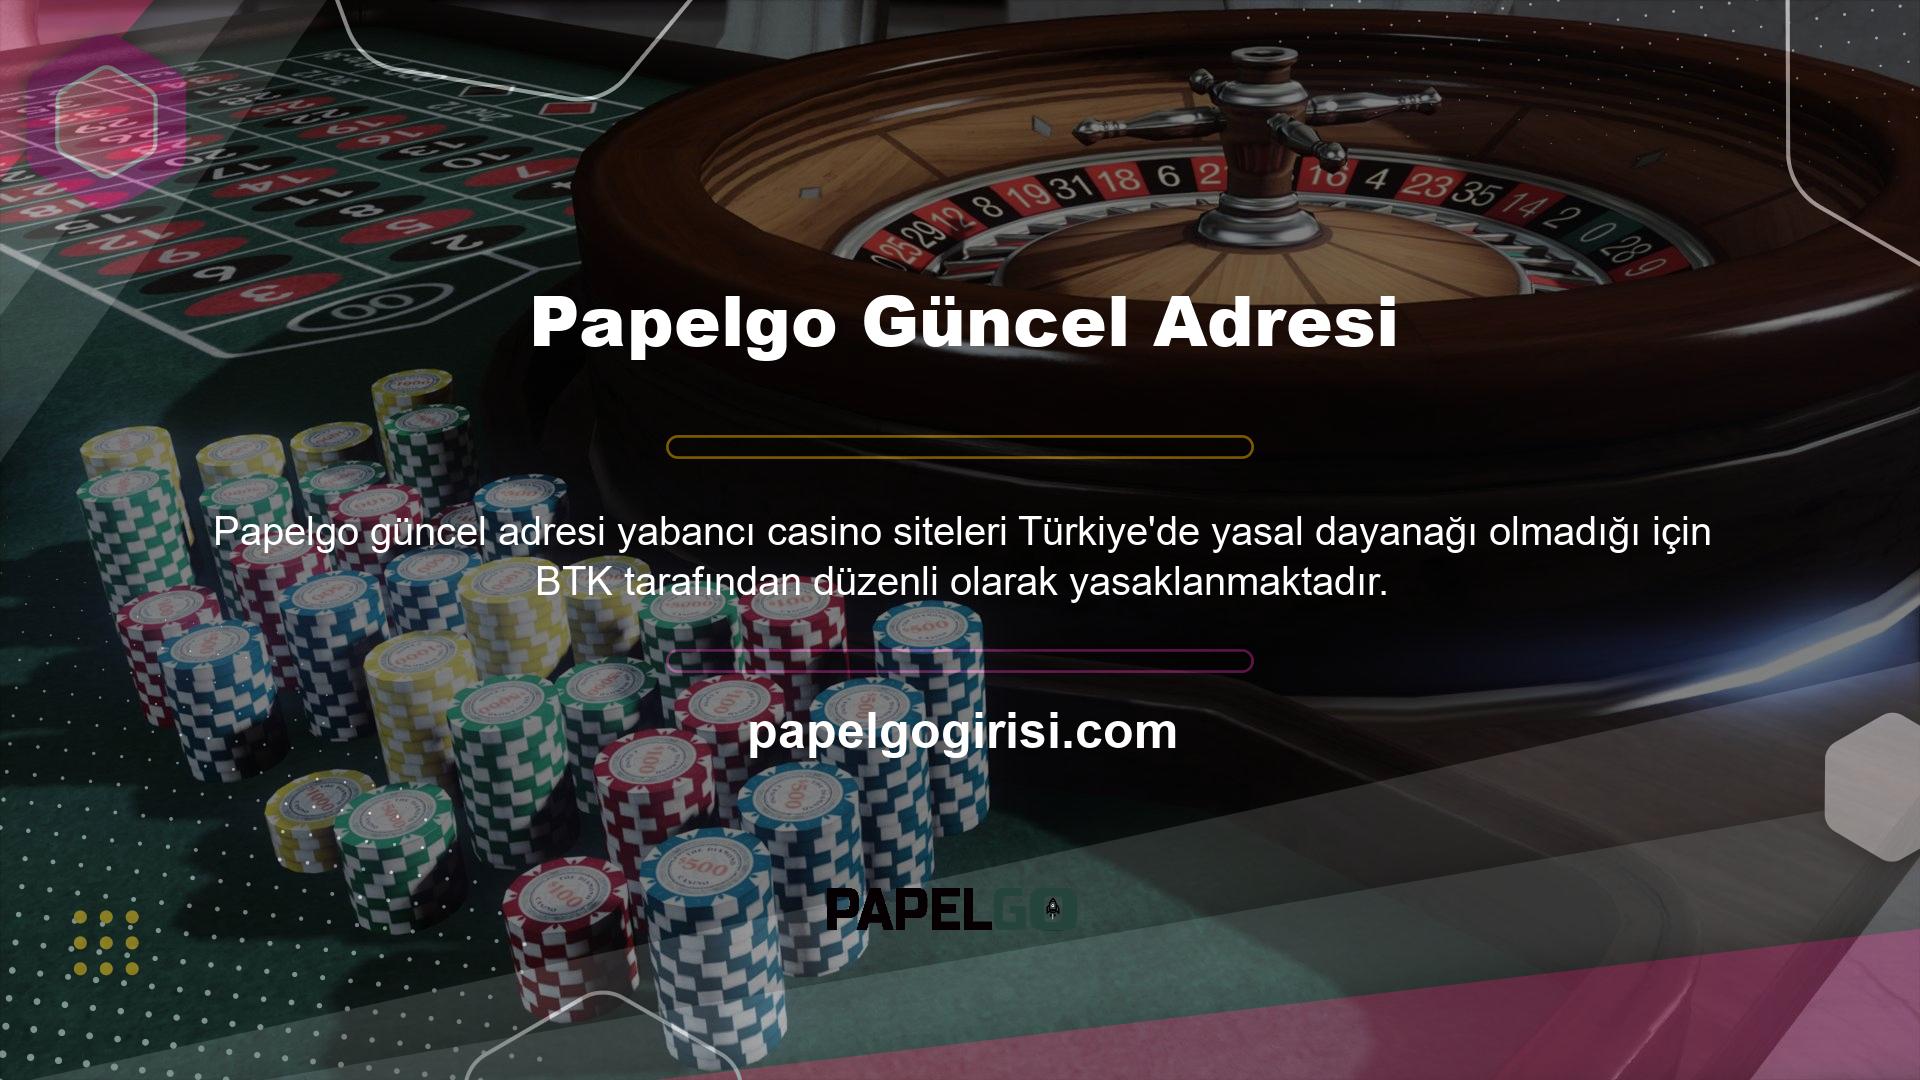 Bununla birlikte, dijital alan adı değişikliği, yasa dışı web sitelerinin Türk casino pazarına girmesine izin verir